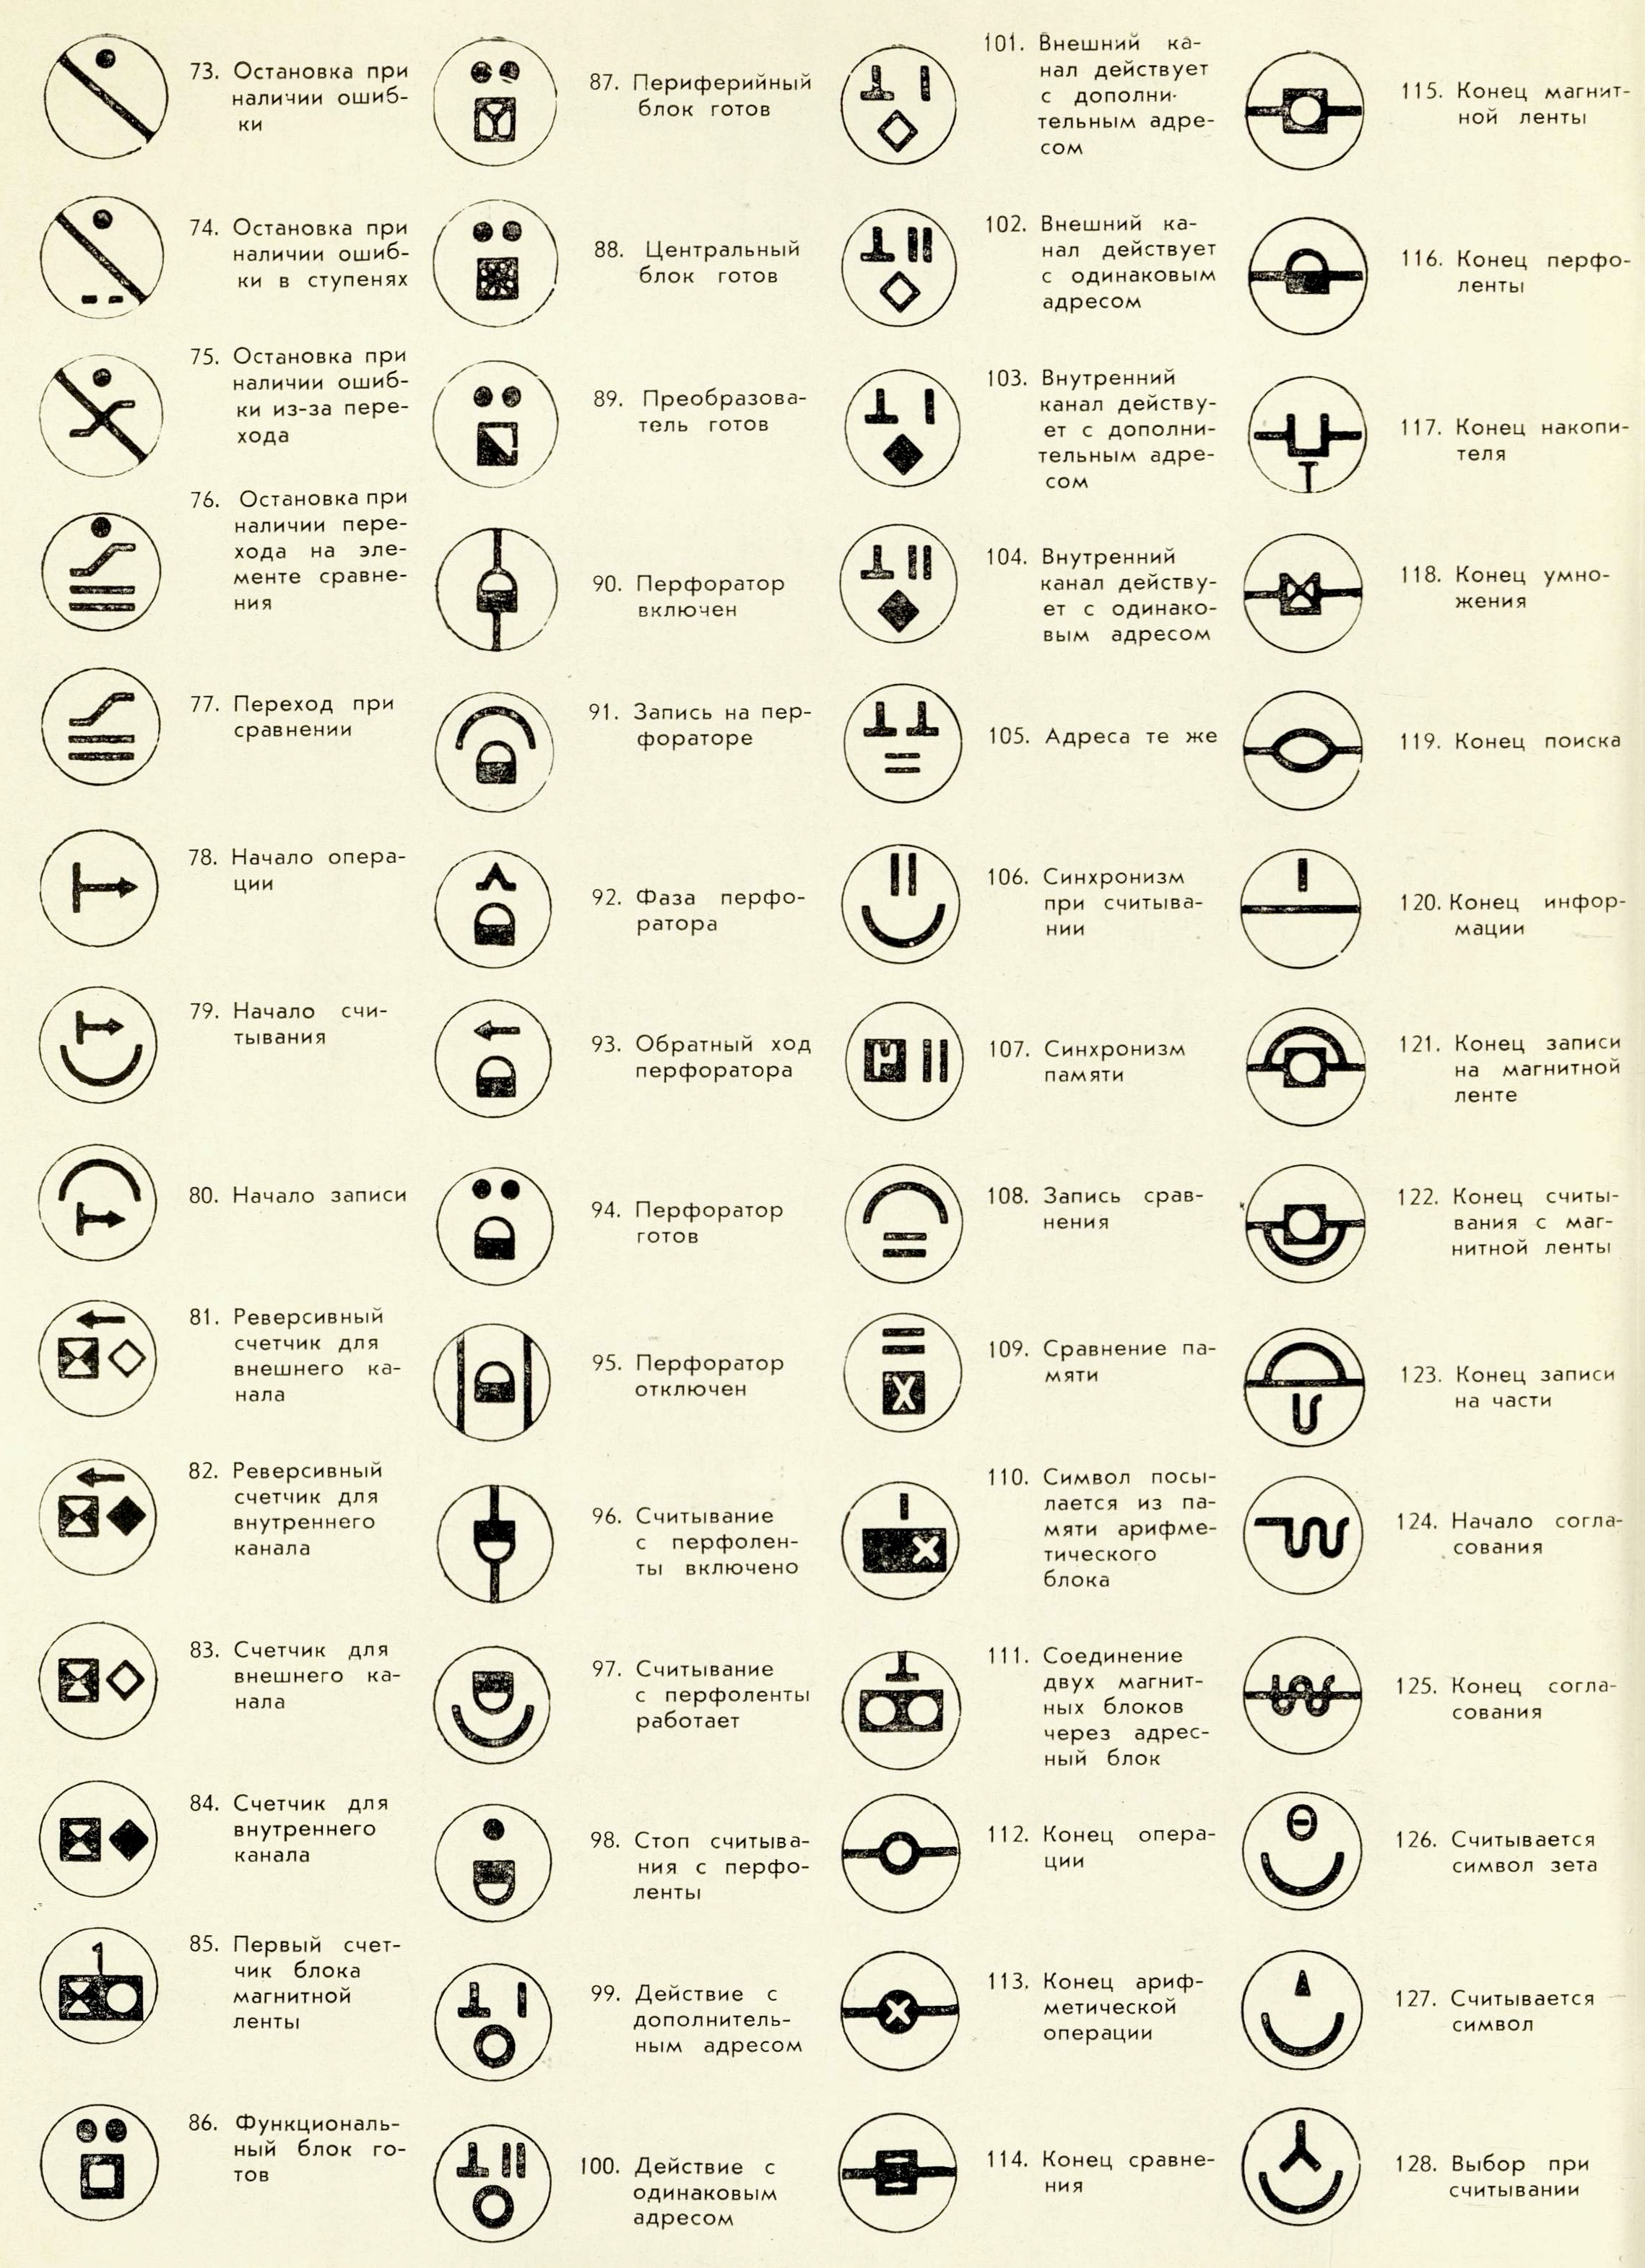 Система символов для электронной вычислительной машины